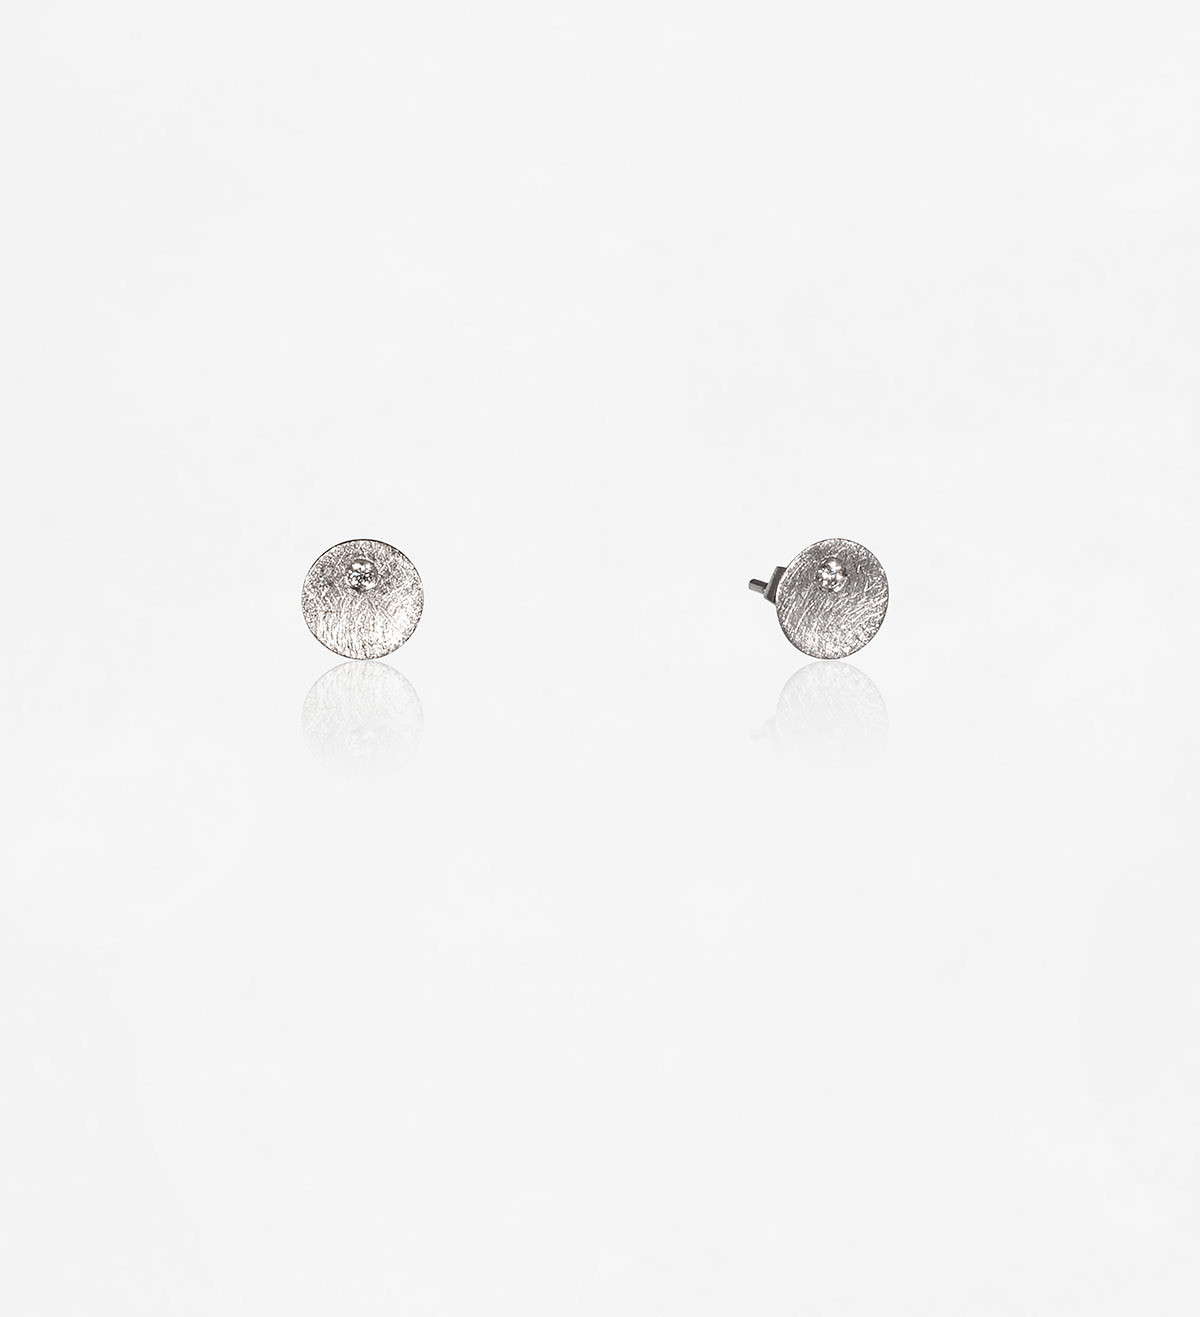 18k white gold earrings Flô 8mm with diamonds 0,05ct